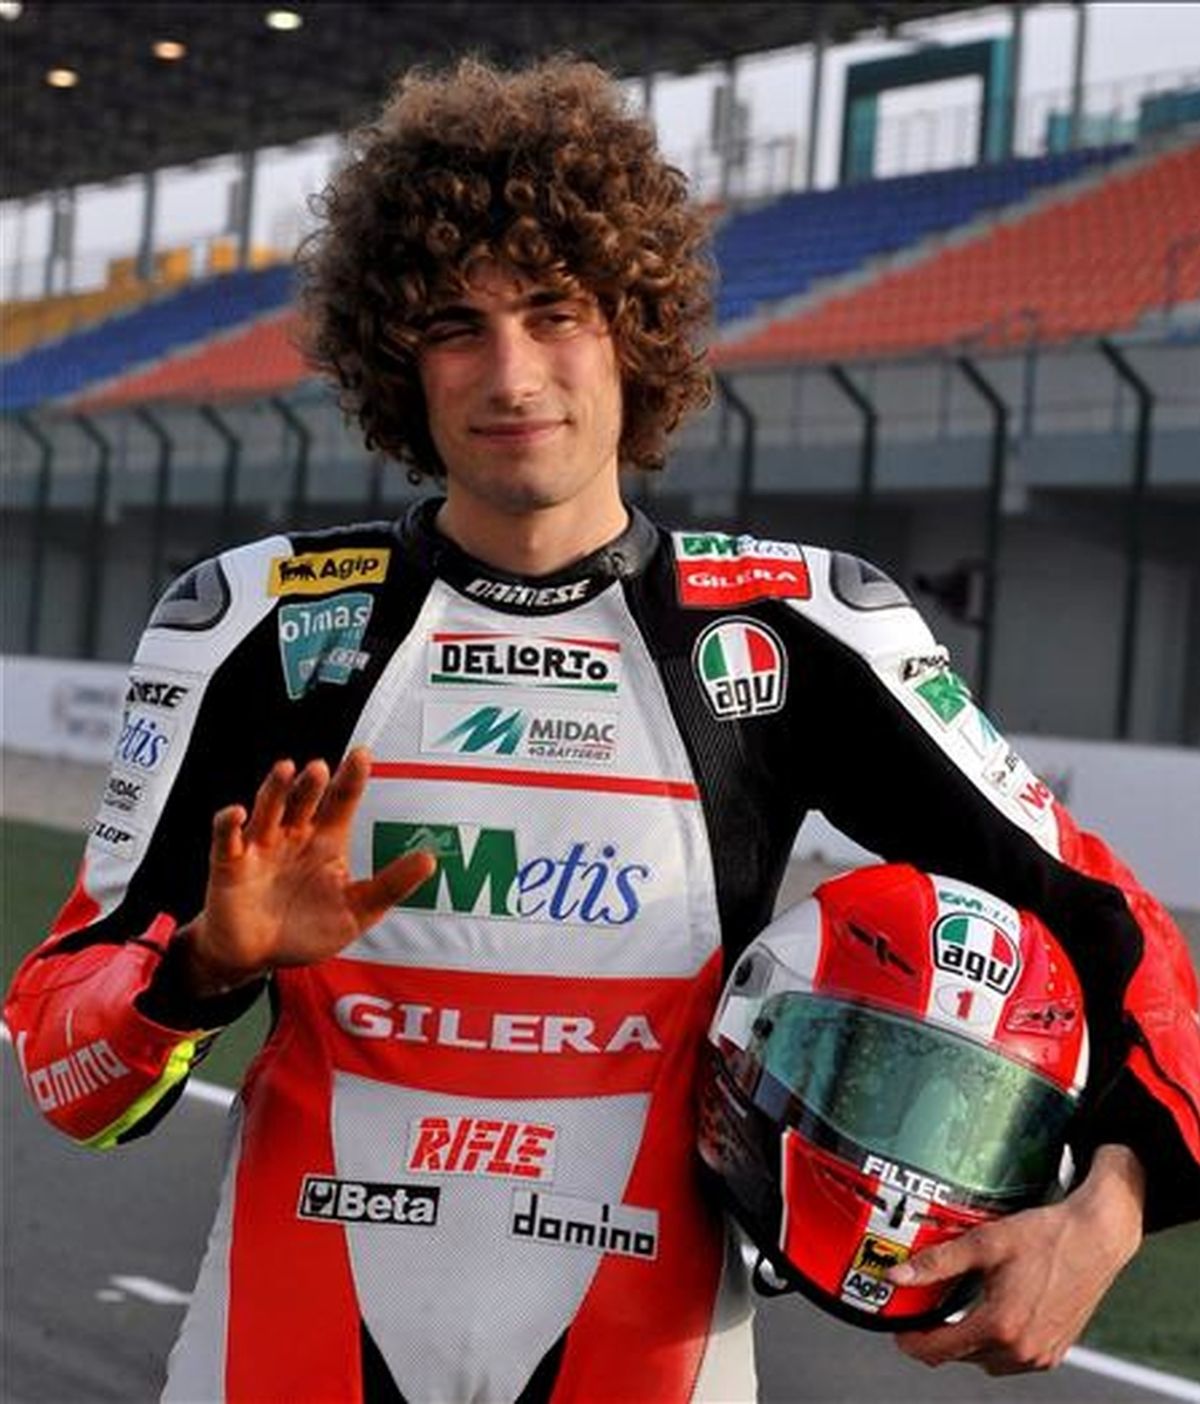 El italiano Marco Simoncelli (Gilera) posa para una foto antes del comienzo de los entrenamientos libres en el circuito internacional de Losail, Doha, Qatar. Este circuito acogerá el 12 de abril de 2009 la primera carrera del Mundial MotoGP 2009. EFE